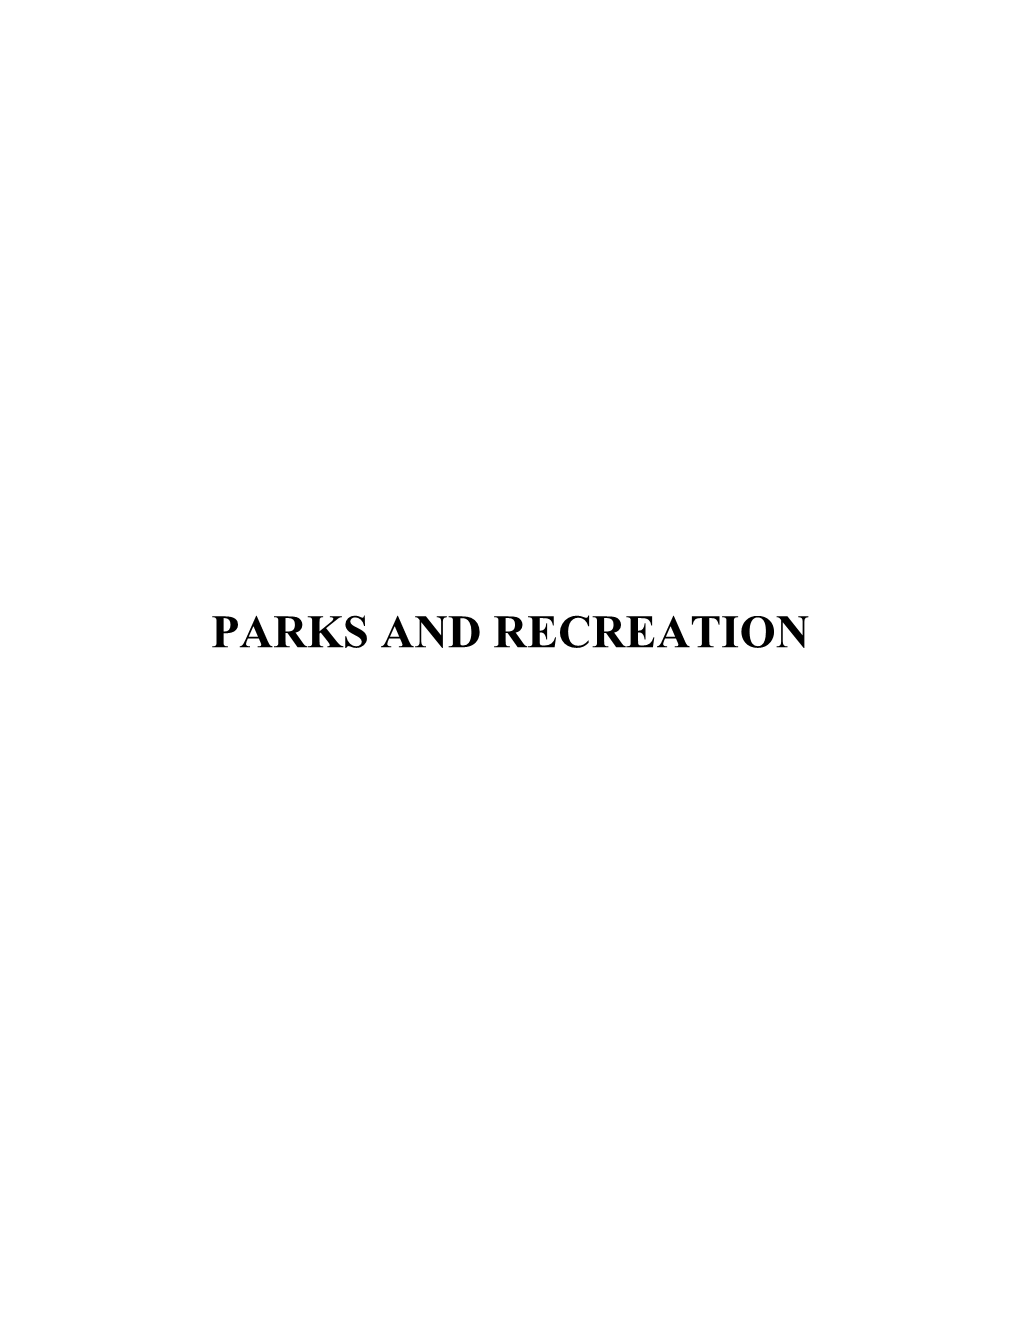 Parks and Recreation Parks and Recreation